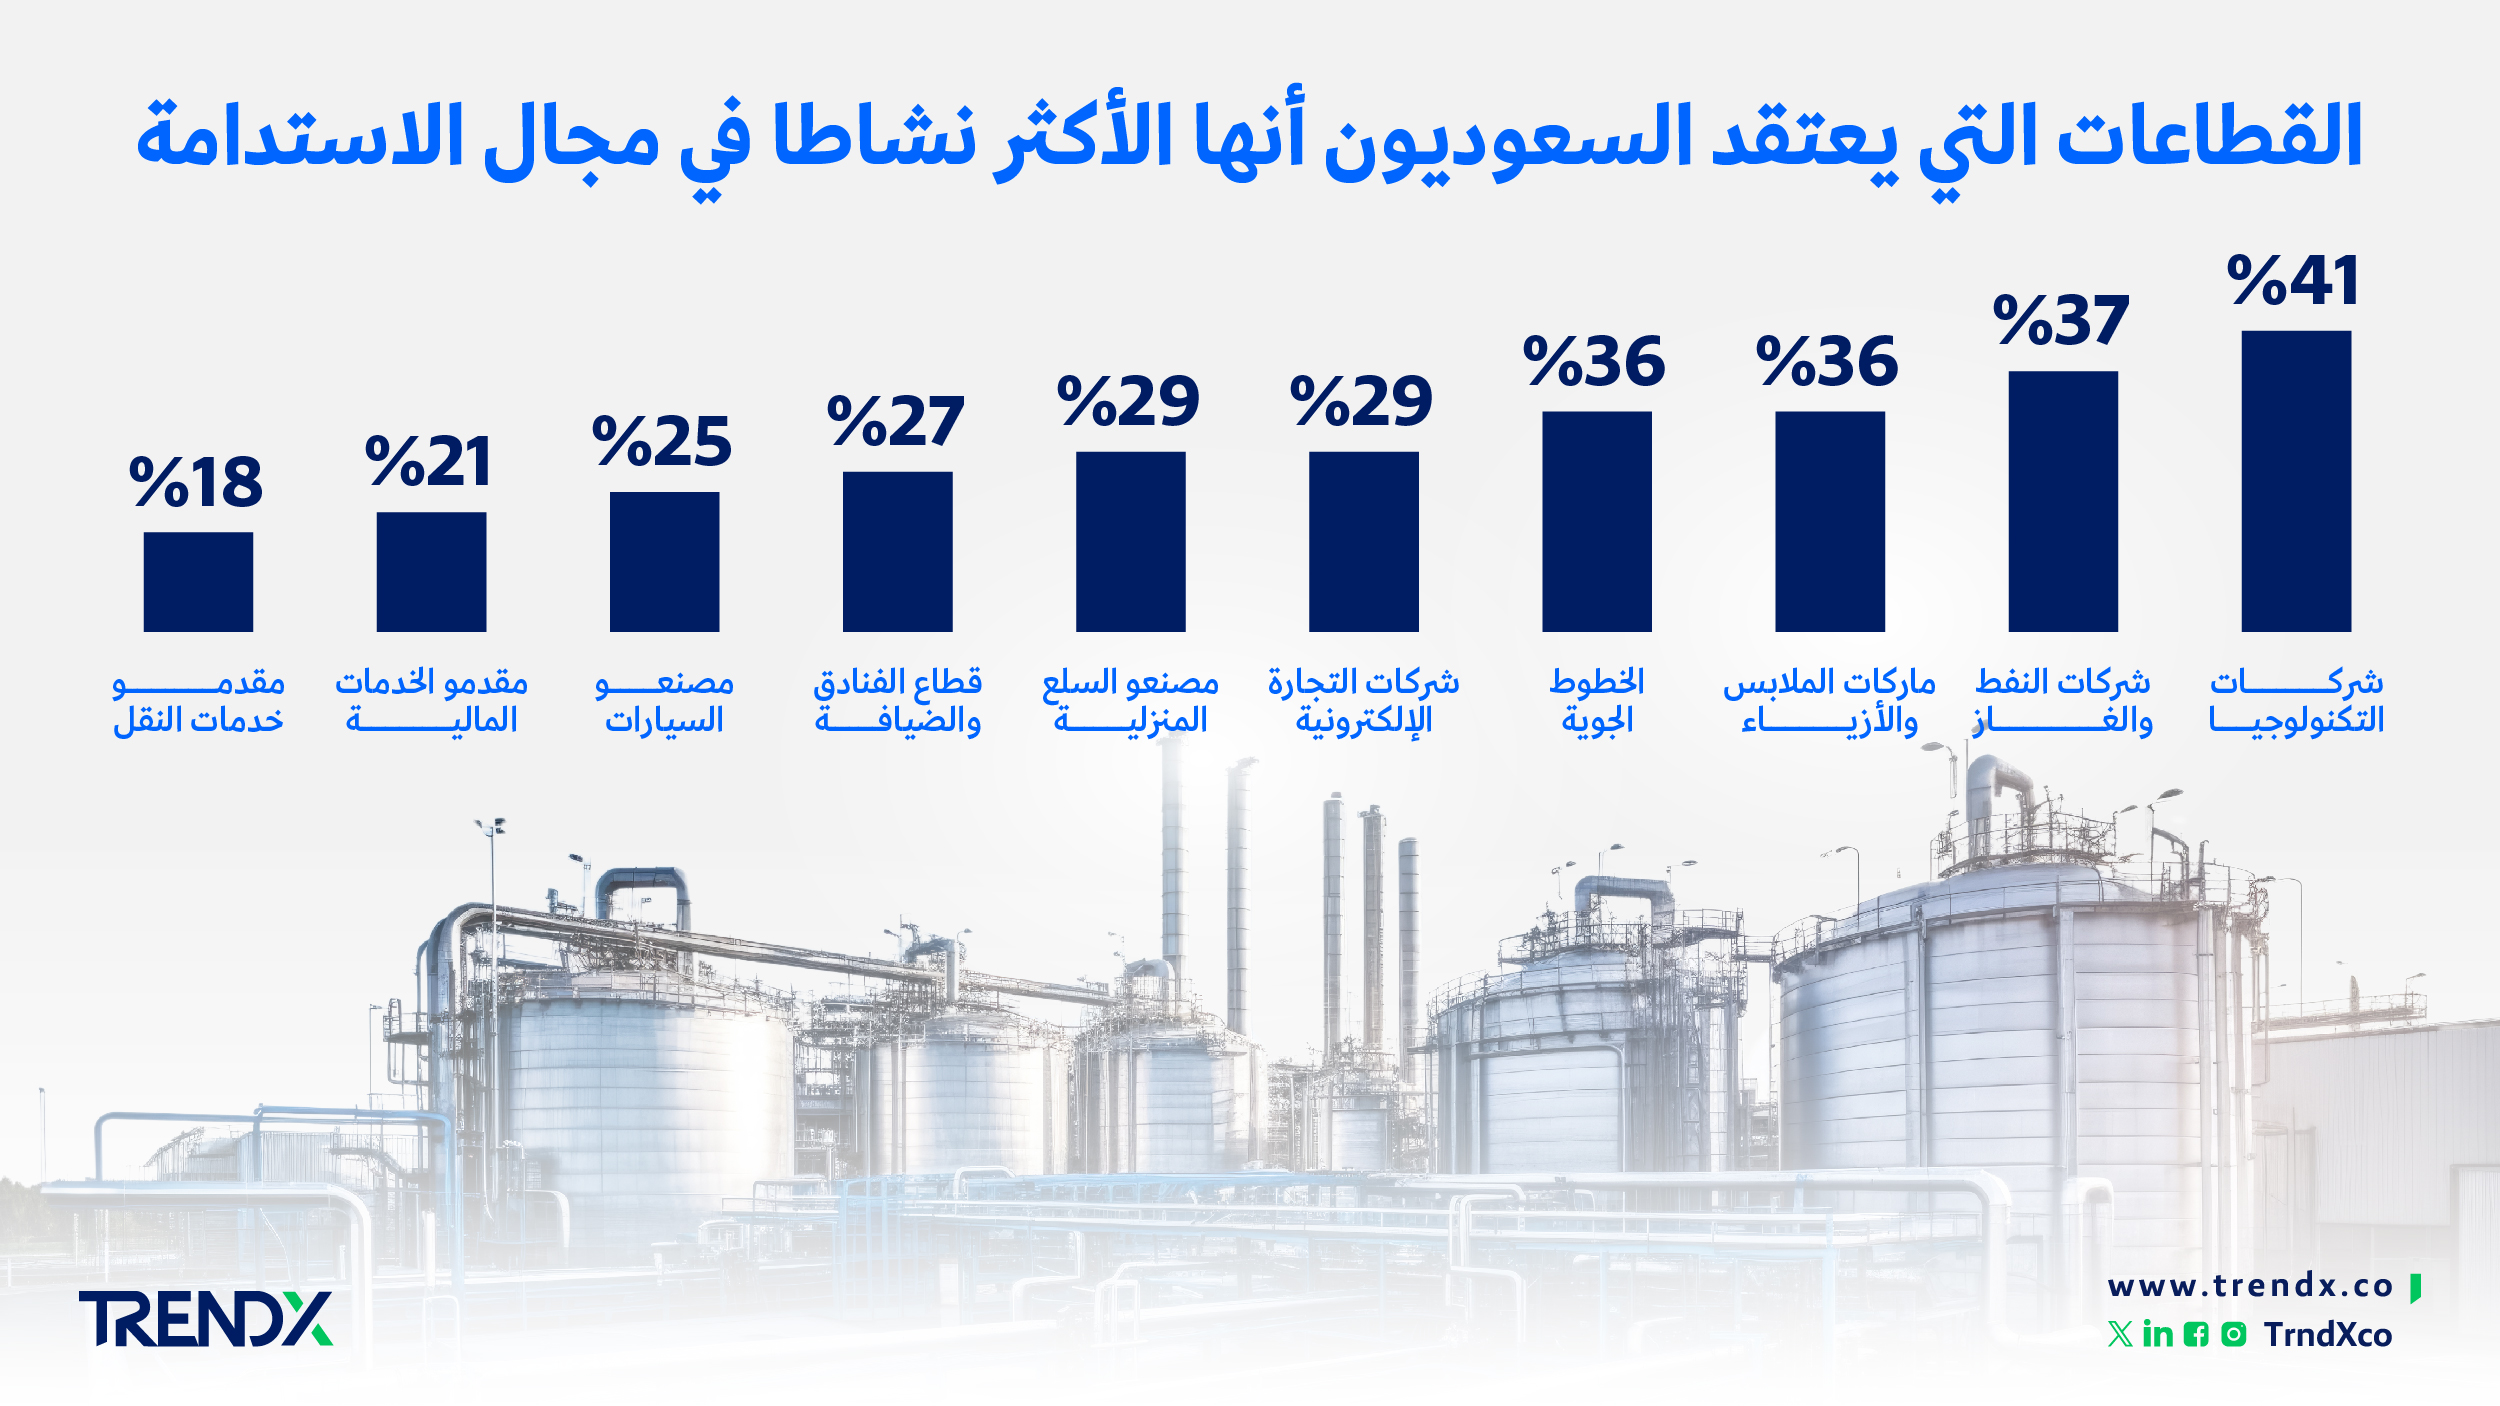 القطاعات التي يعتقد السعوديون أنها الأكثر نشاطا في مجال الاستدامة ثروات السعوديين في الفترة من عام 2000 إلى 2022 01